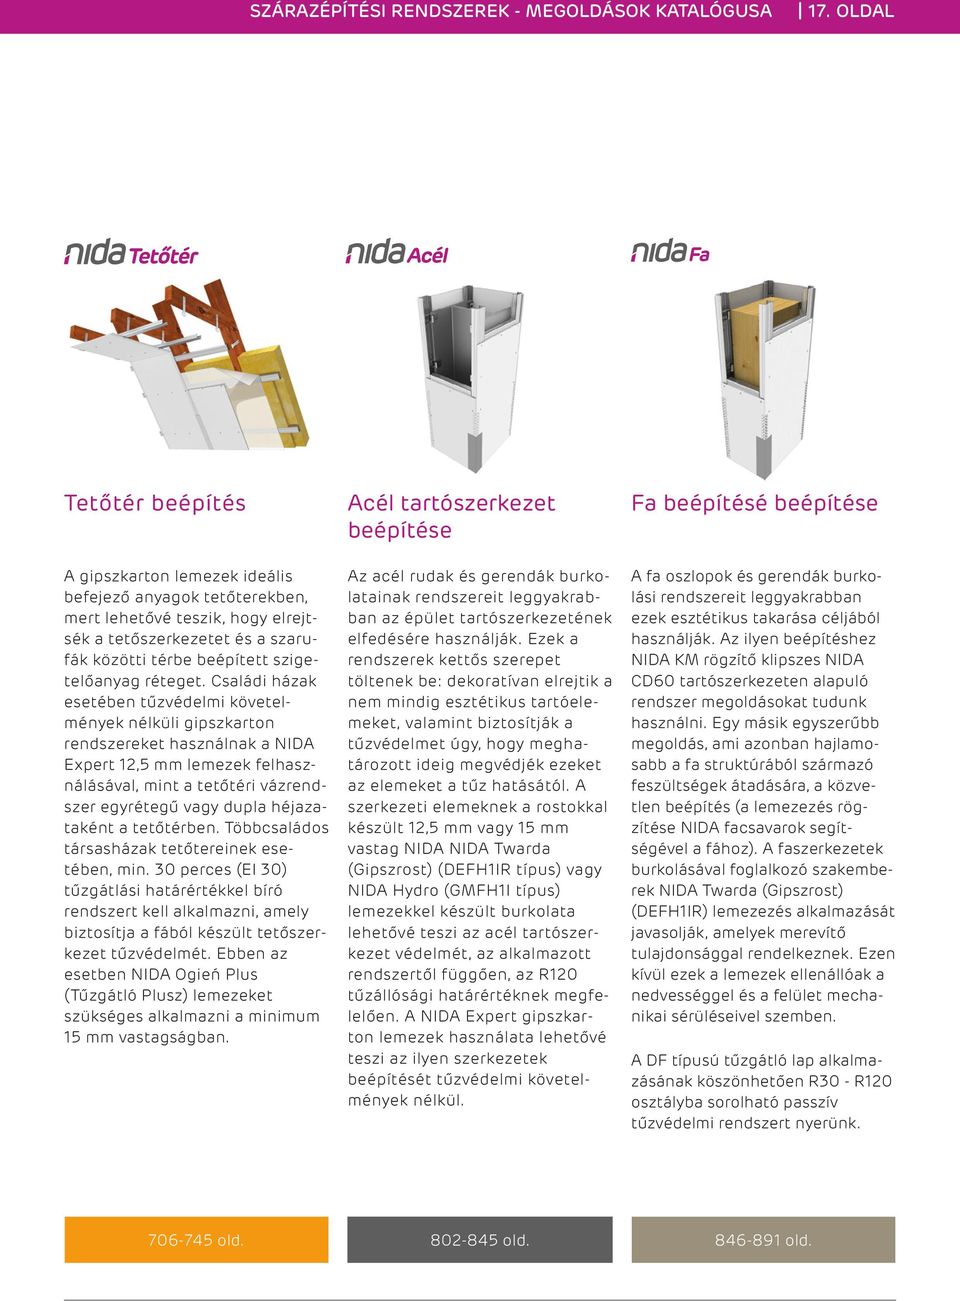 Családi házak esetében tűzvédelmi követelmények nélküli gipszkarton rendszereket használnak a NIDA Expert 12,5 mm lemezek felhasználásával, mint a tetőtéri vázrendszer egyrétegű vagy dupla